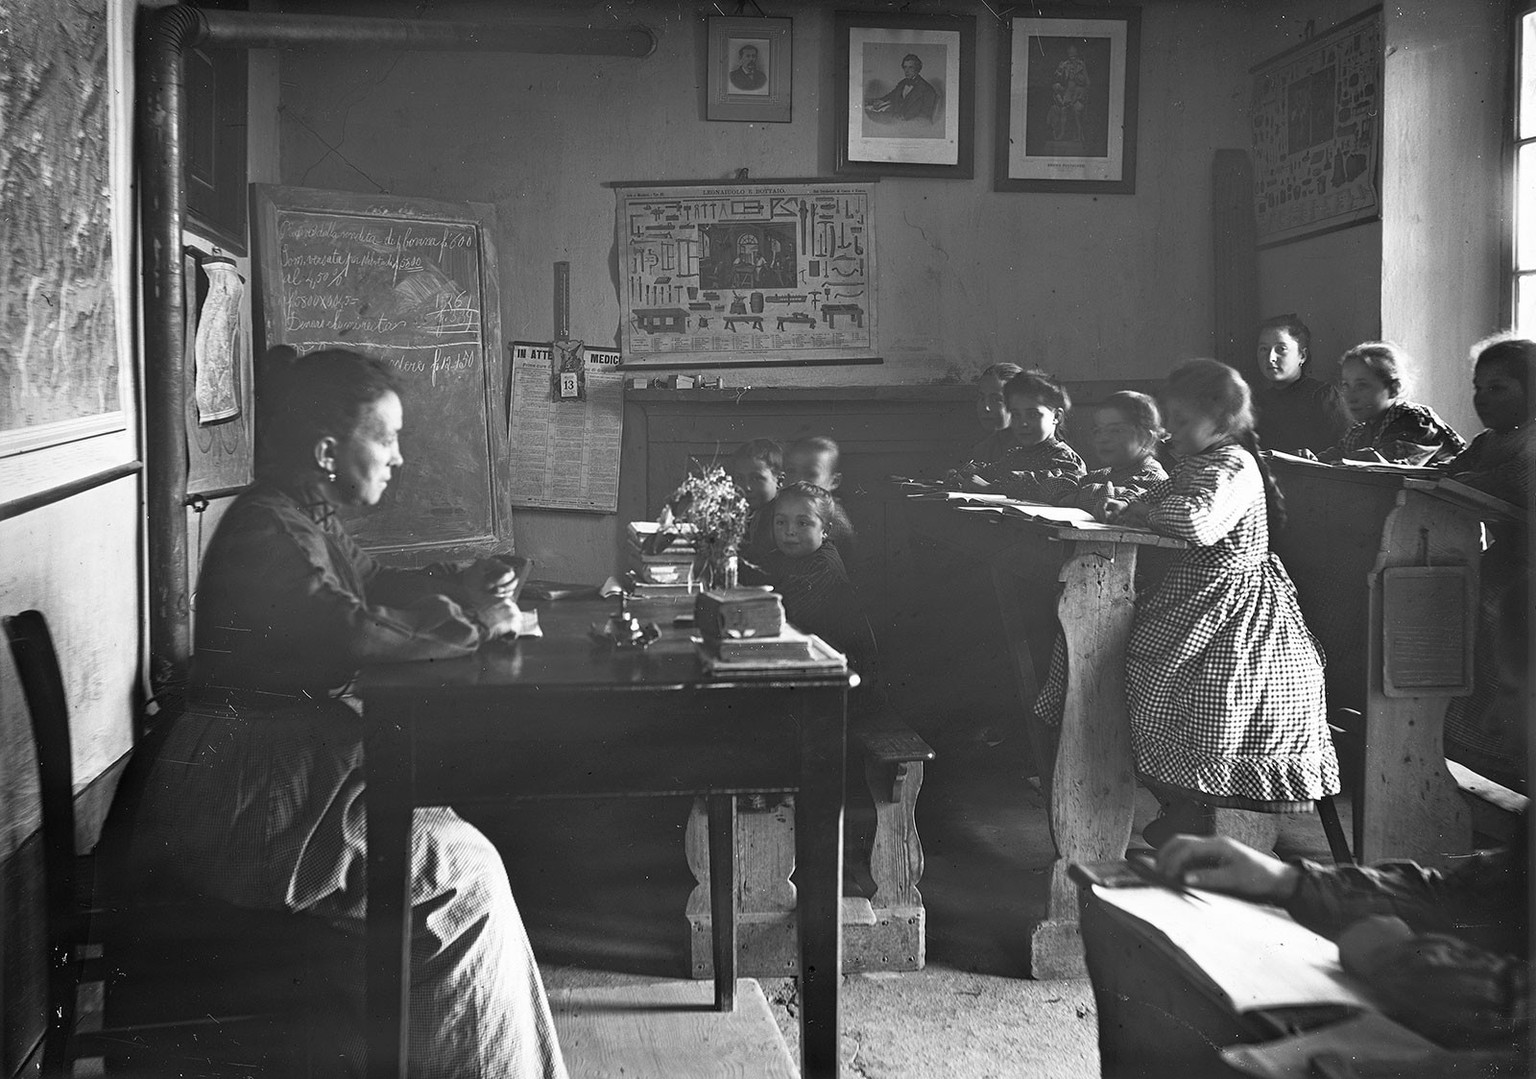 Au Tessin, les dialectes étaient interdits à l’école. C’est l’italien qui était enseigné. Une salle de classe tessinoise vers 1920. Photographie de Rudolf Zinggeler-Danioth.
https://permalink.national ...